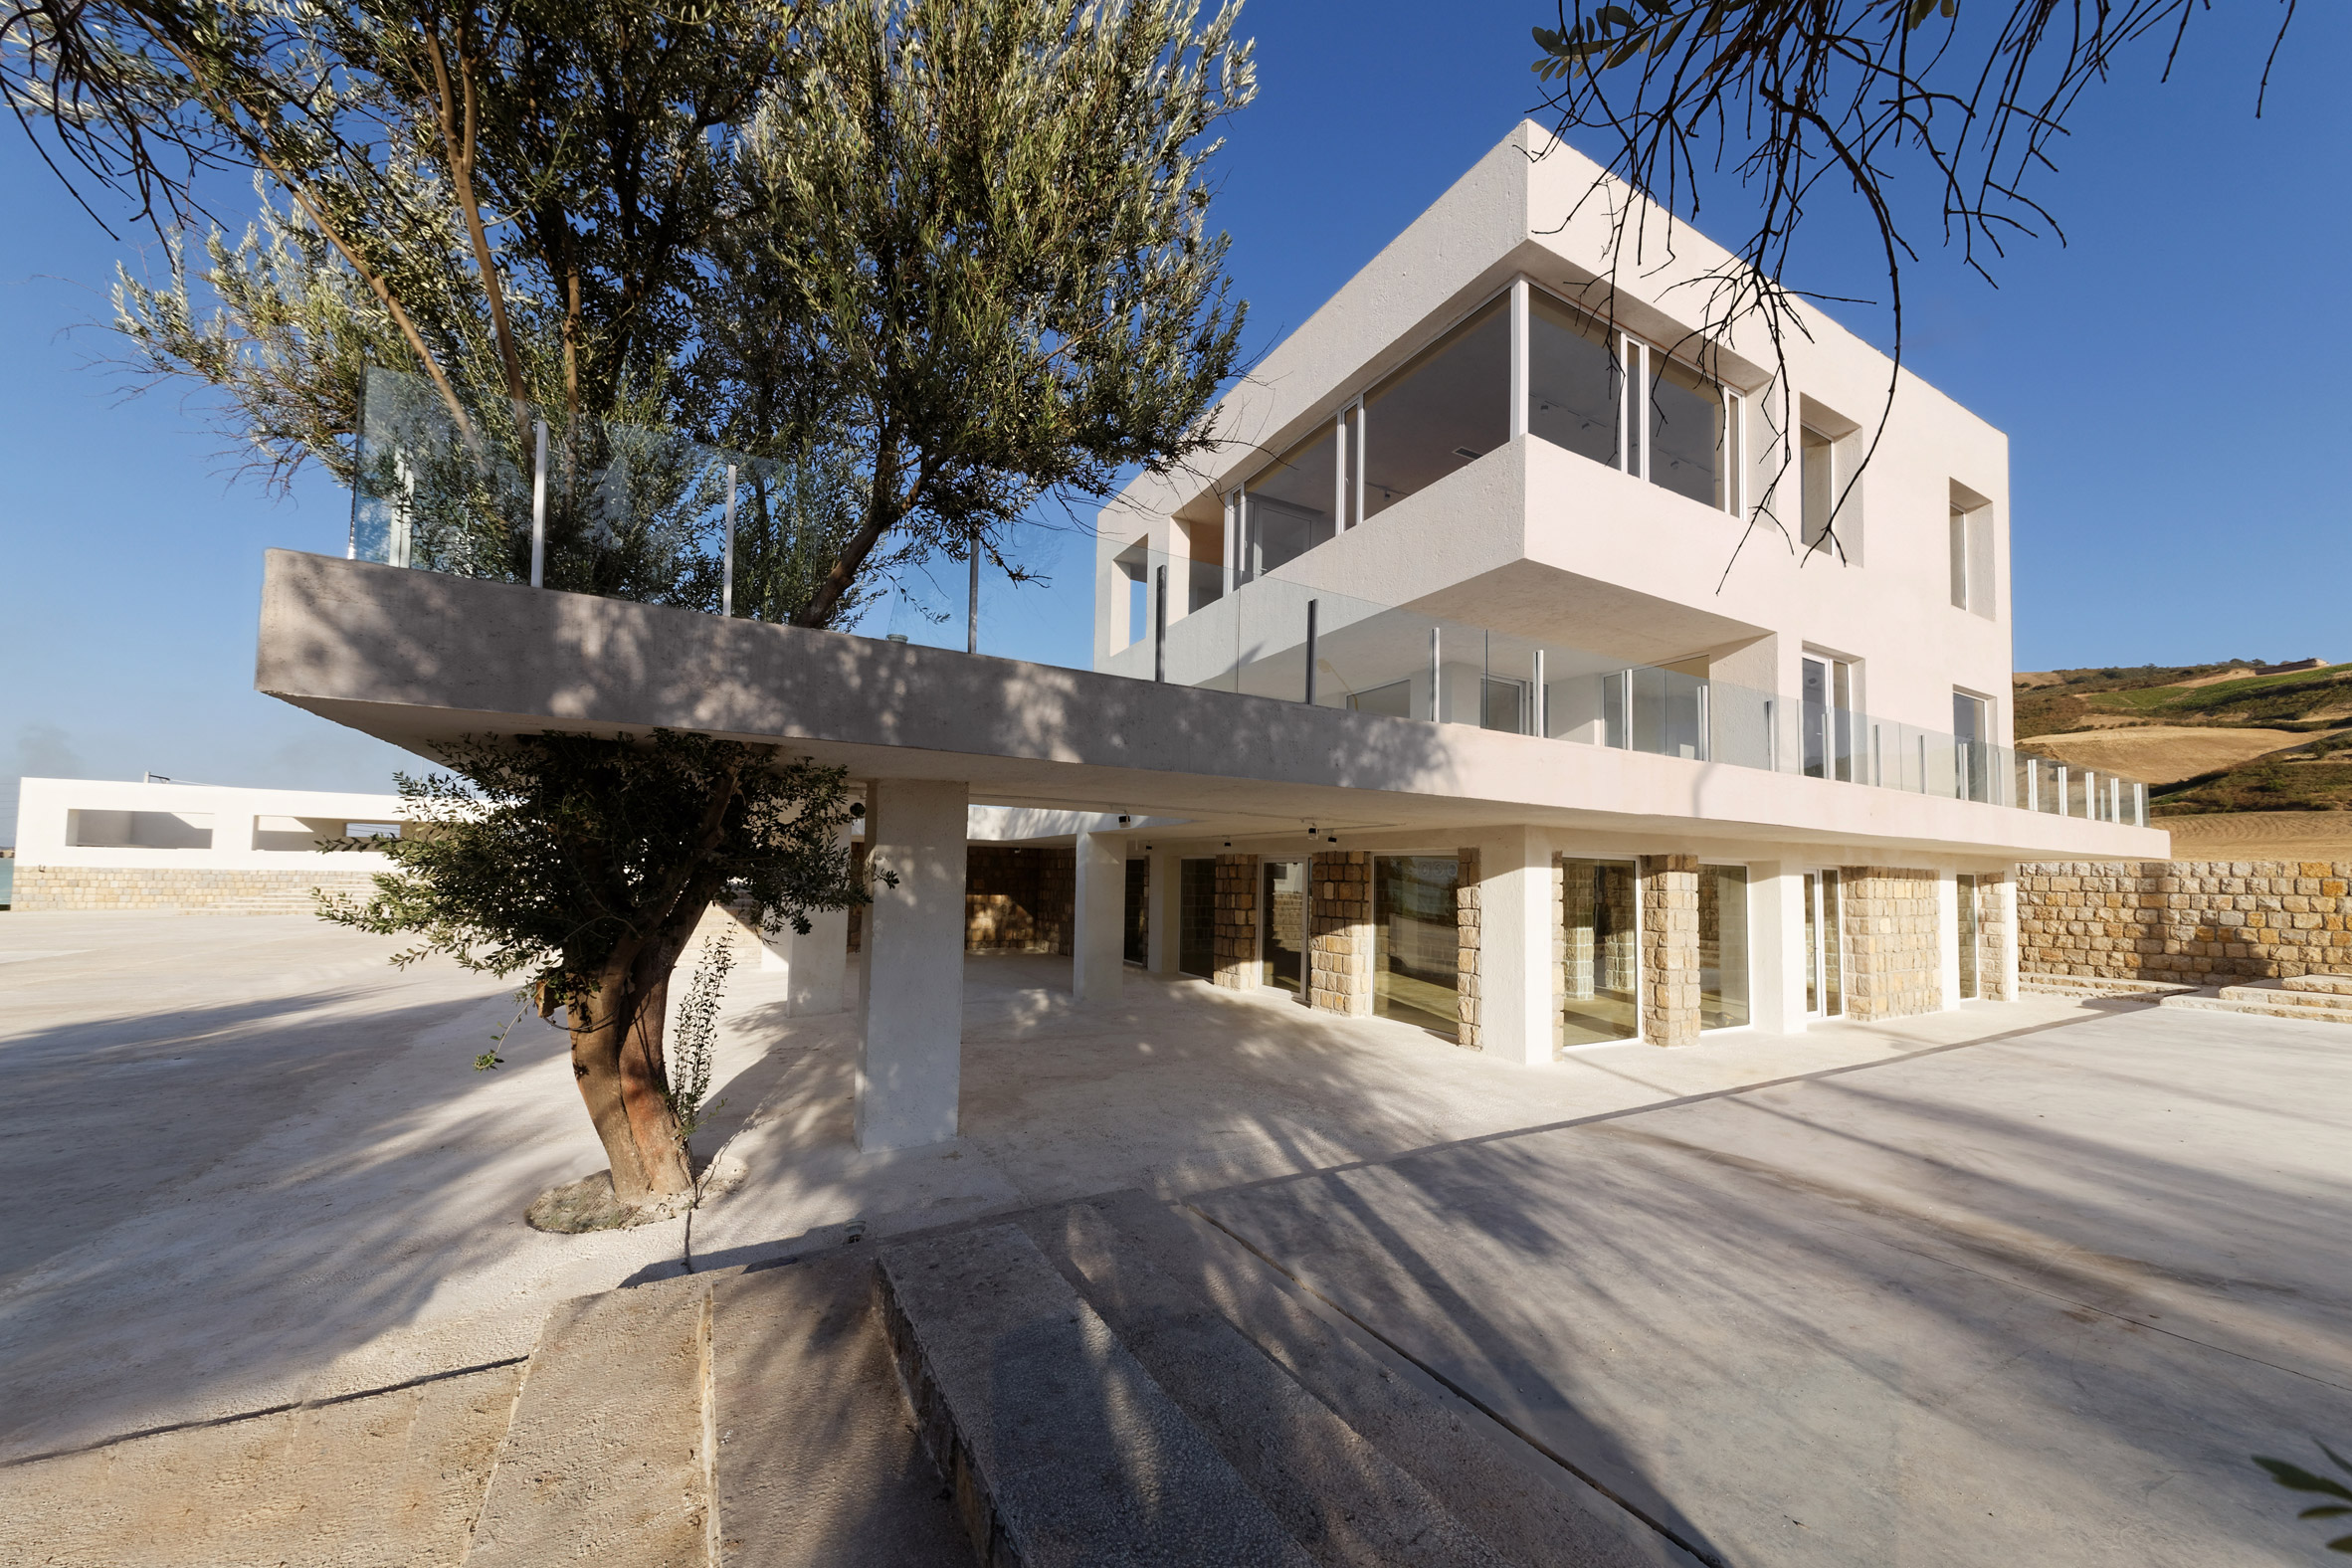 Villa Cheshm Cheran by ZAV Architects